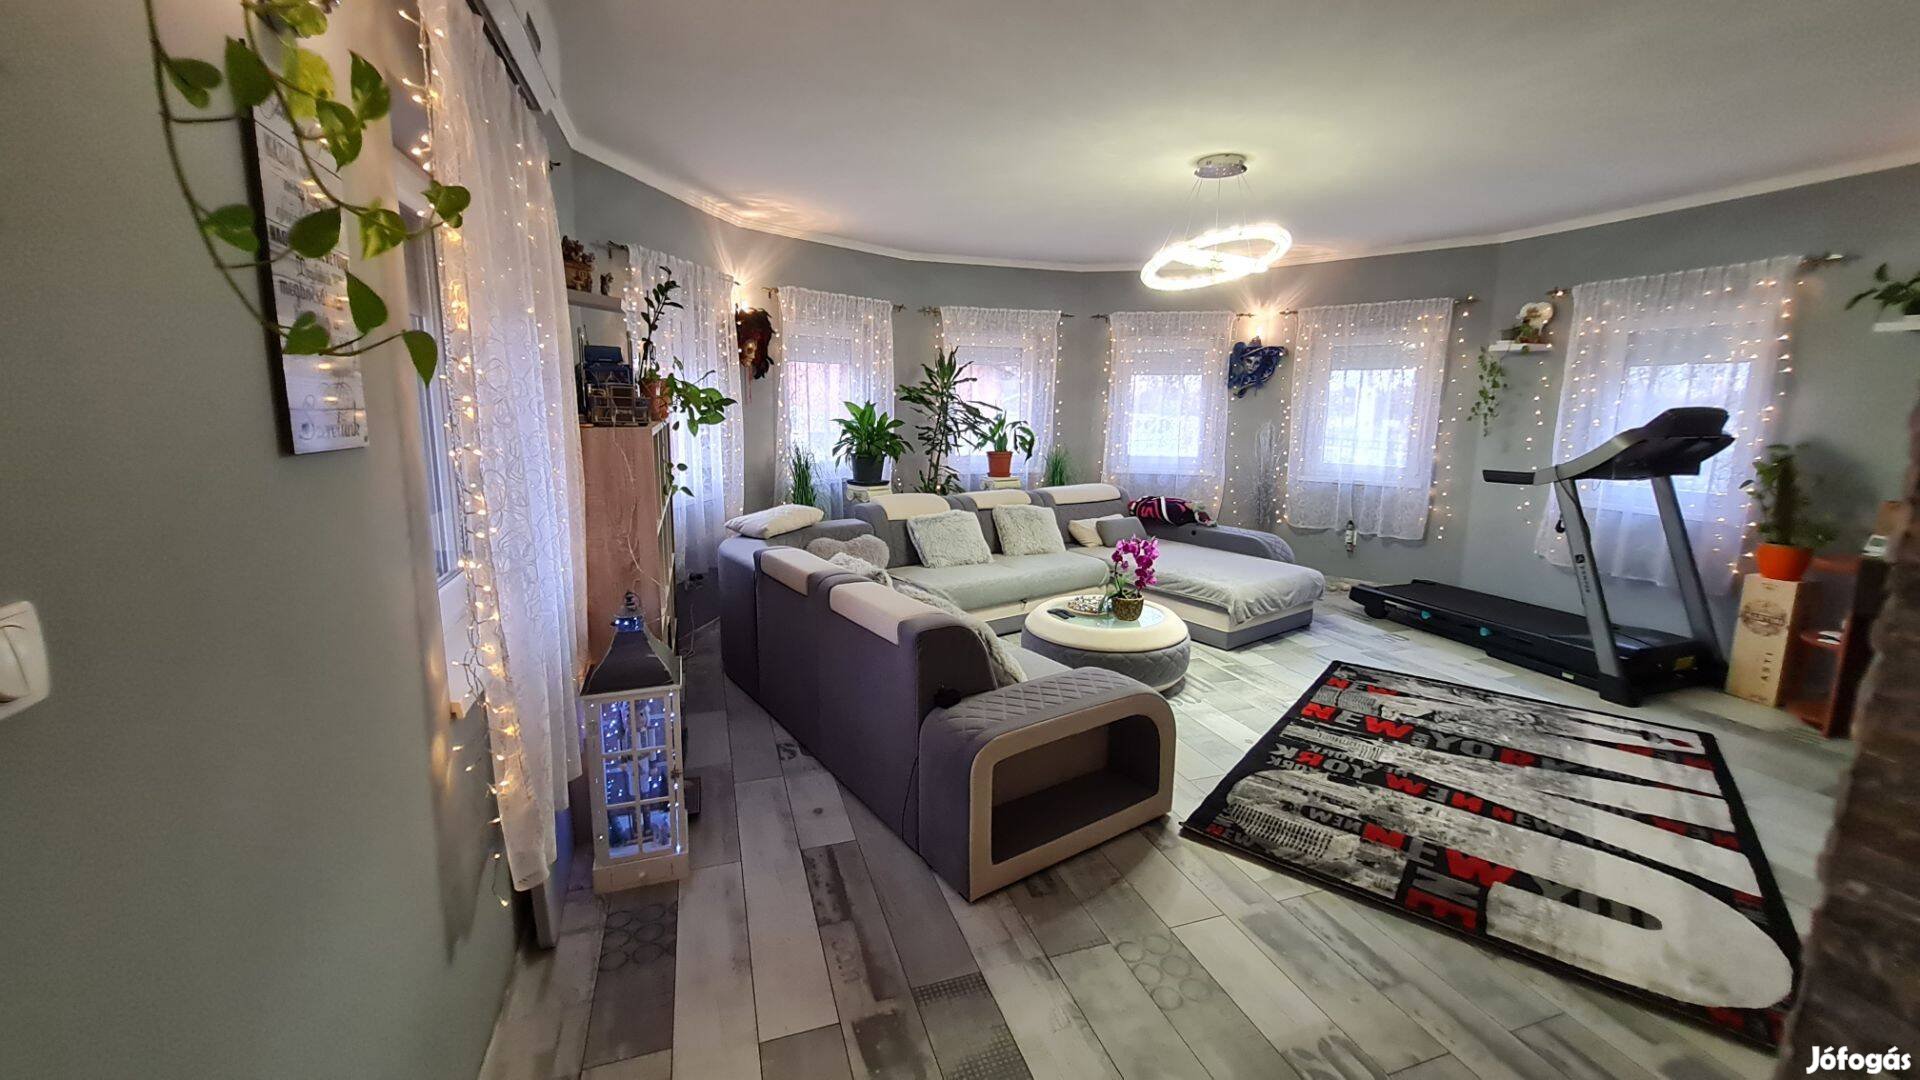 Eladó Rácalmáson egy 200nm-es, nappali+3szobás, luxus családi ház